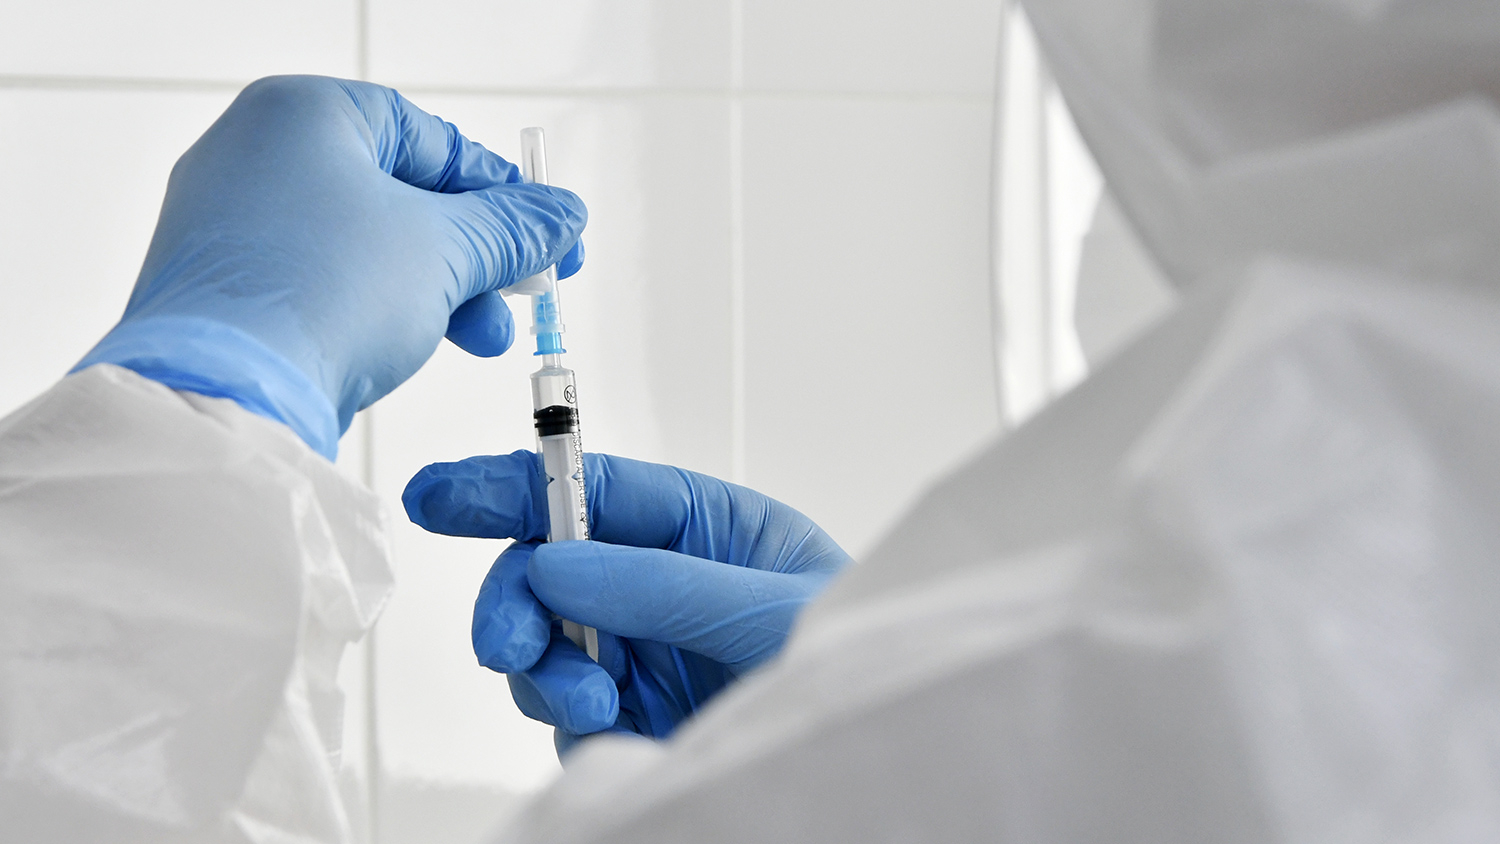 Вакцина от COVID-19 может быть недоступна до 2022 года для 25% населения Земли